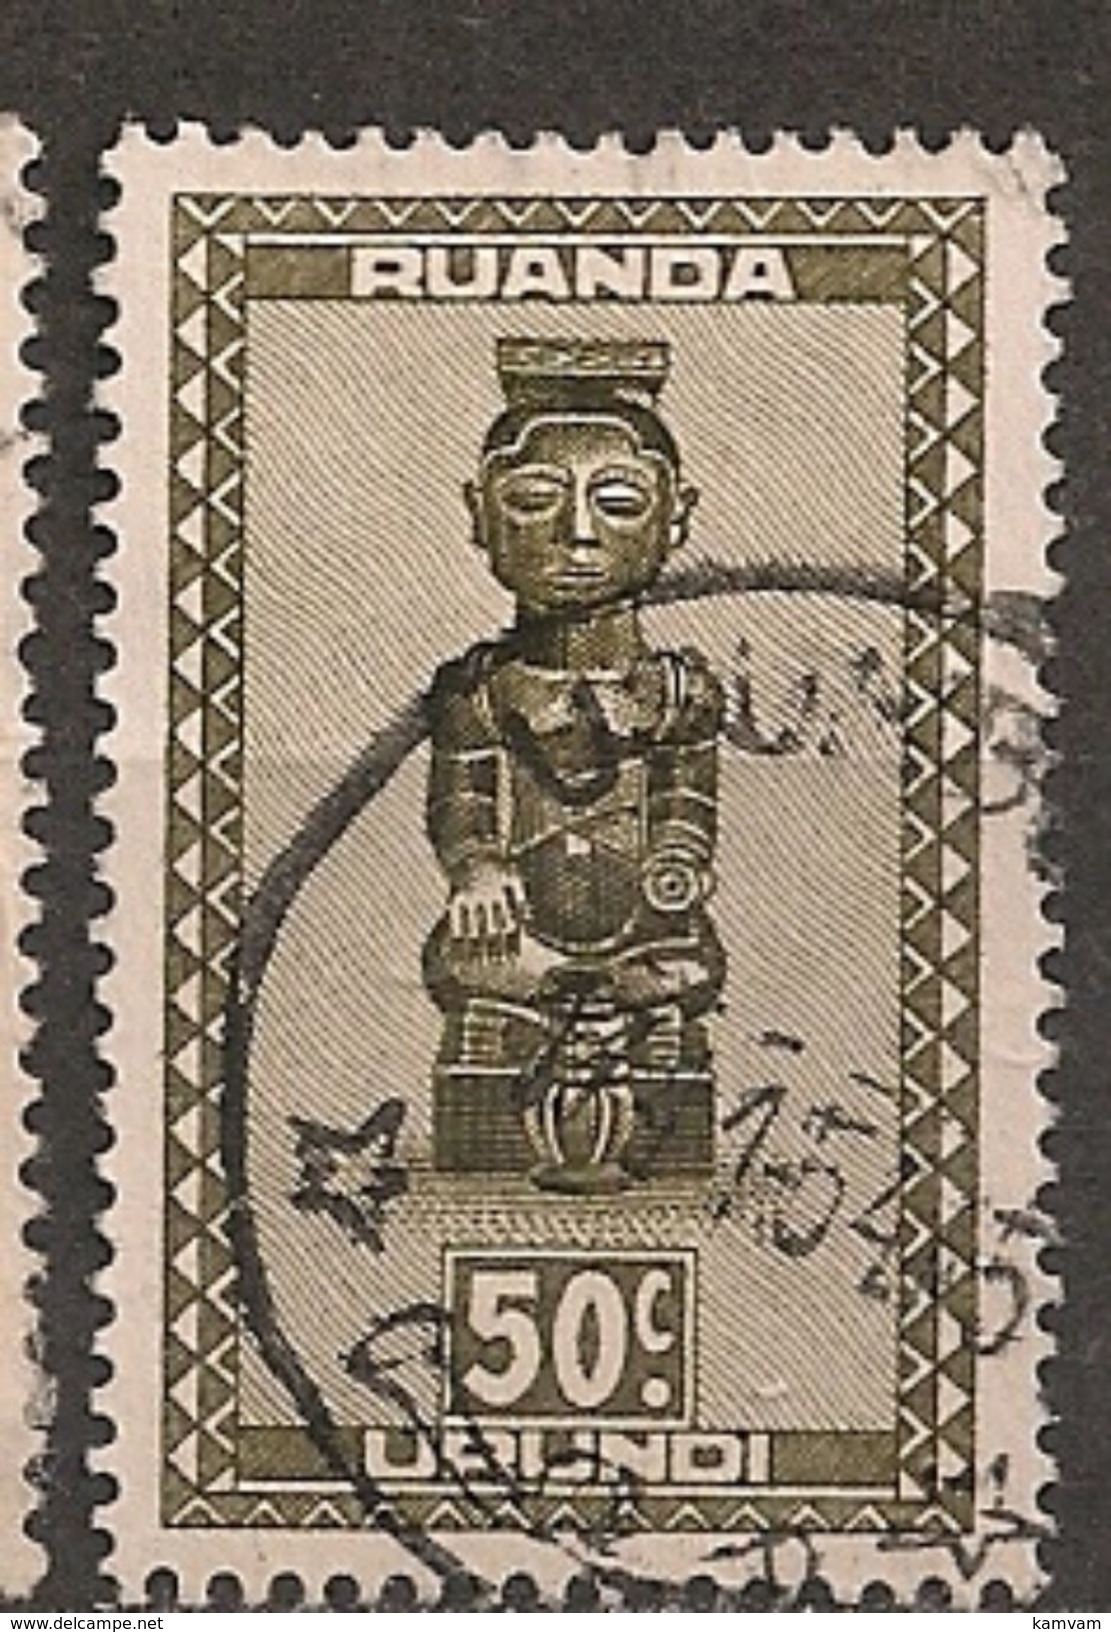 CONGO RUANDA URUNDI 159 USUMBURA - Gebruikt